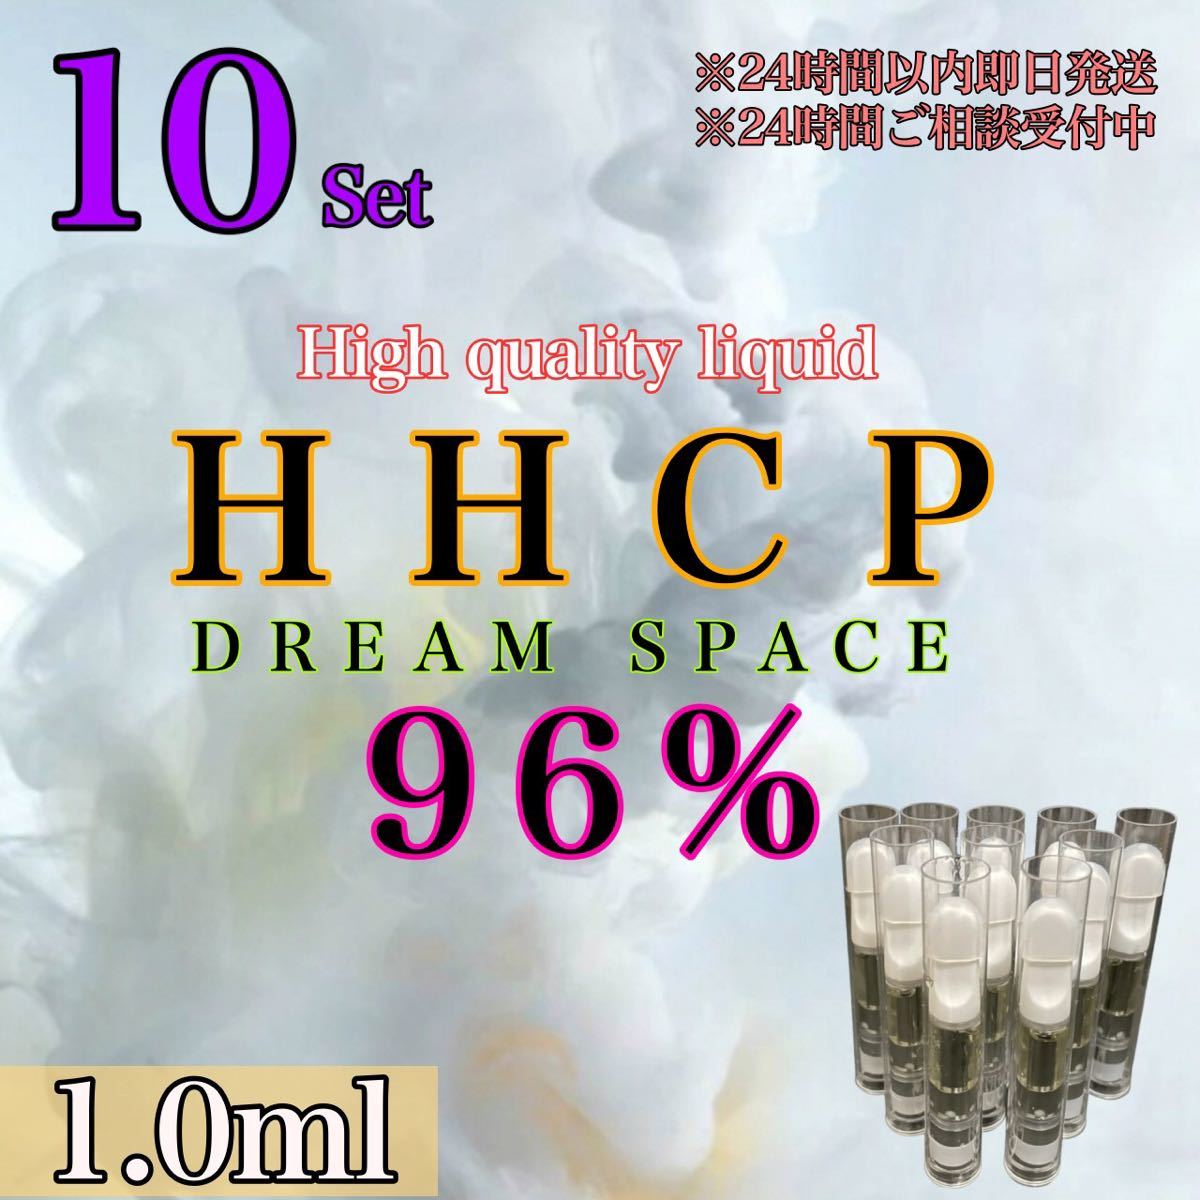 10本）HH原料96%使用リキッド 不眠症改善に最適☆内容量1.0ml 